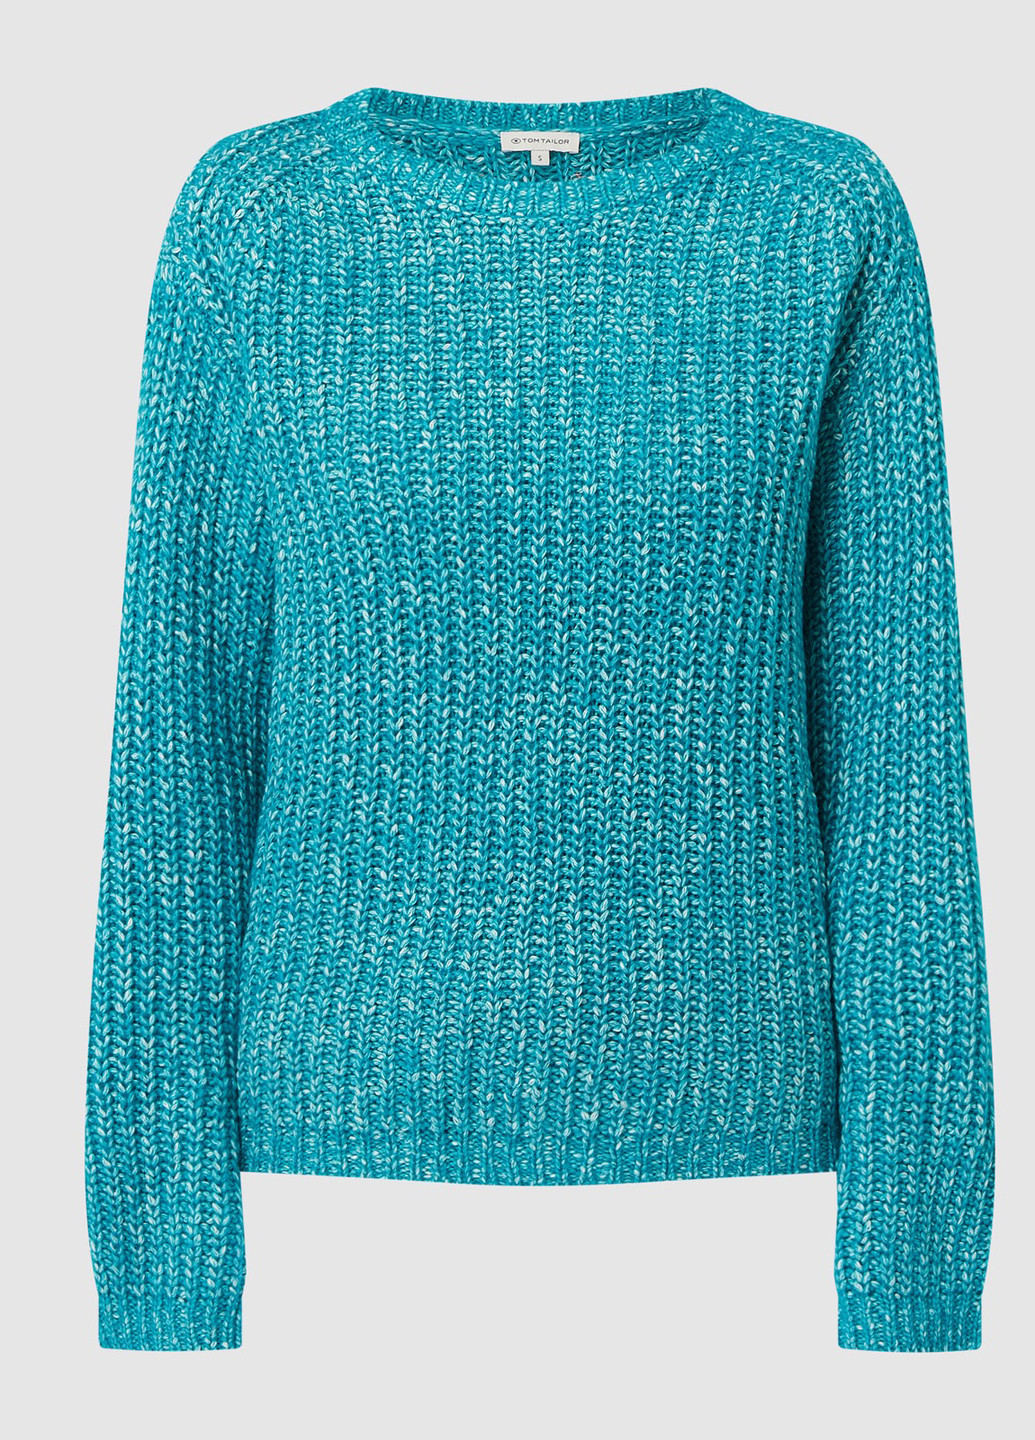 Бирюзовый демисезонный свитер джемпер Tom Tailor